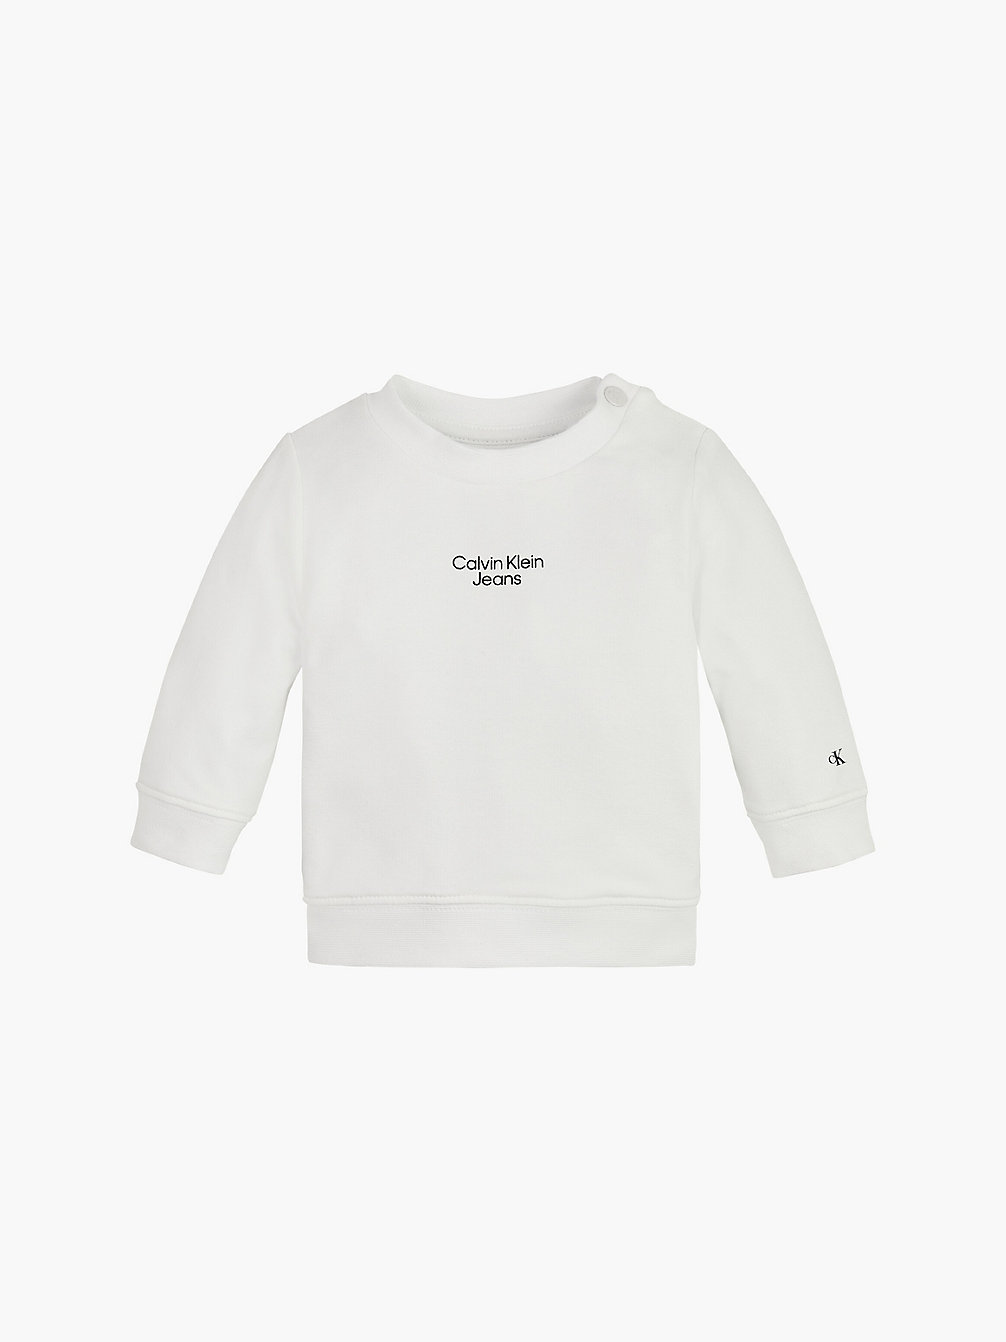 BRIGHT WHITE Newborn Organic Cotton Sweatshirt undefined newborn Calvin Klein